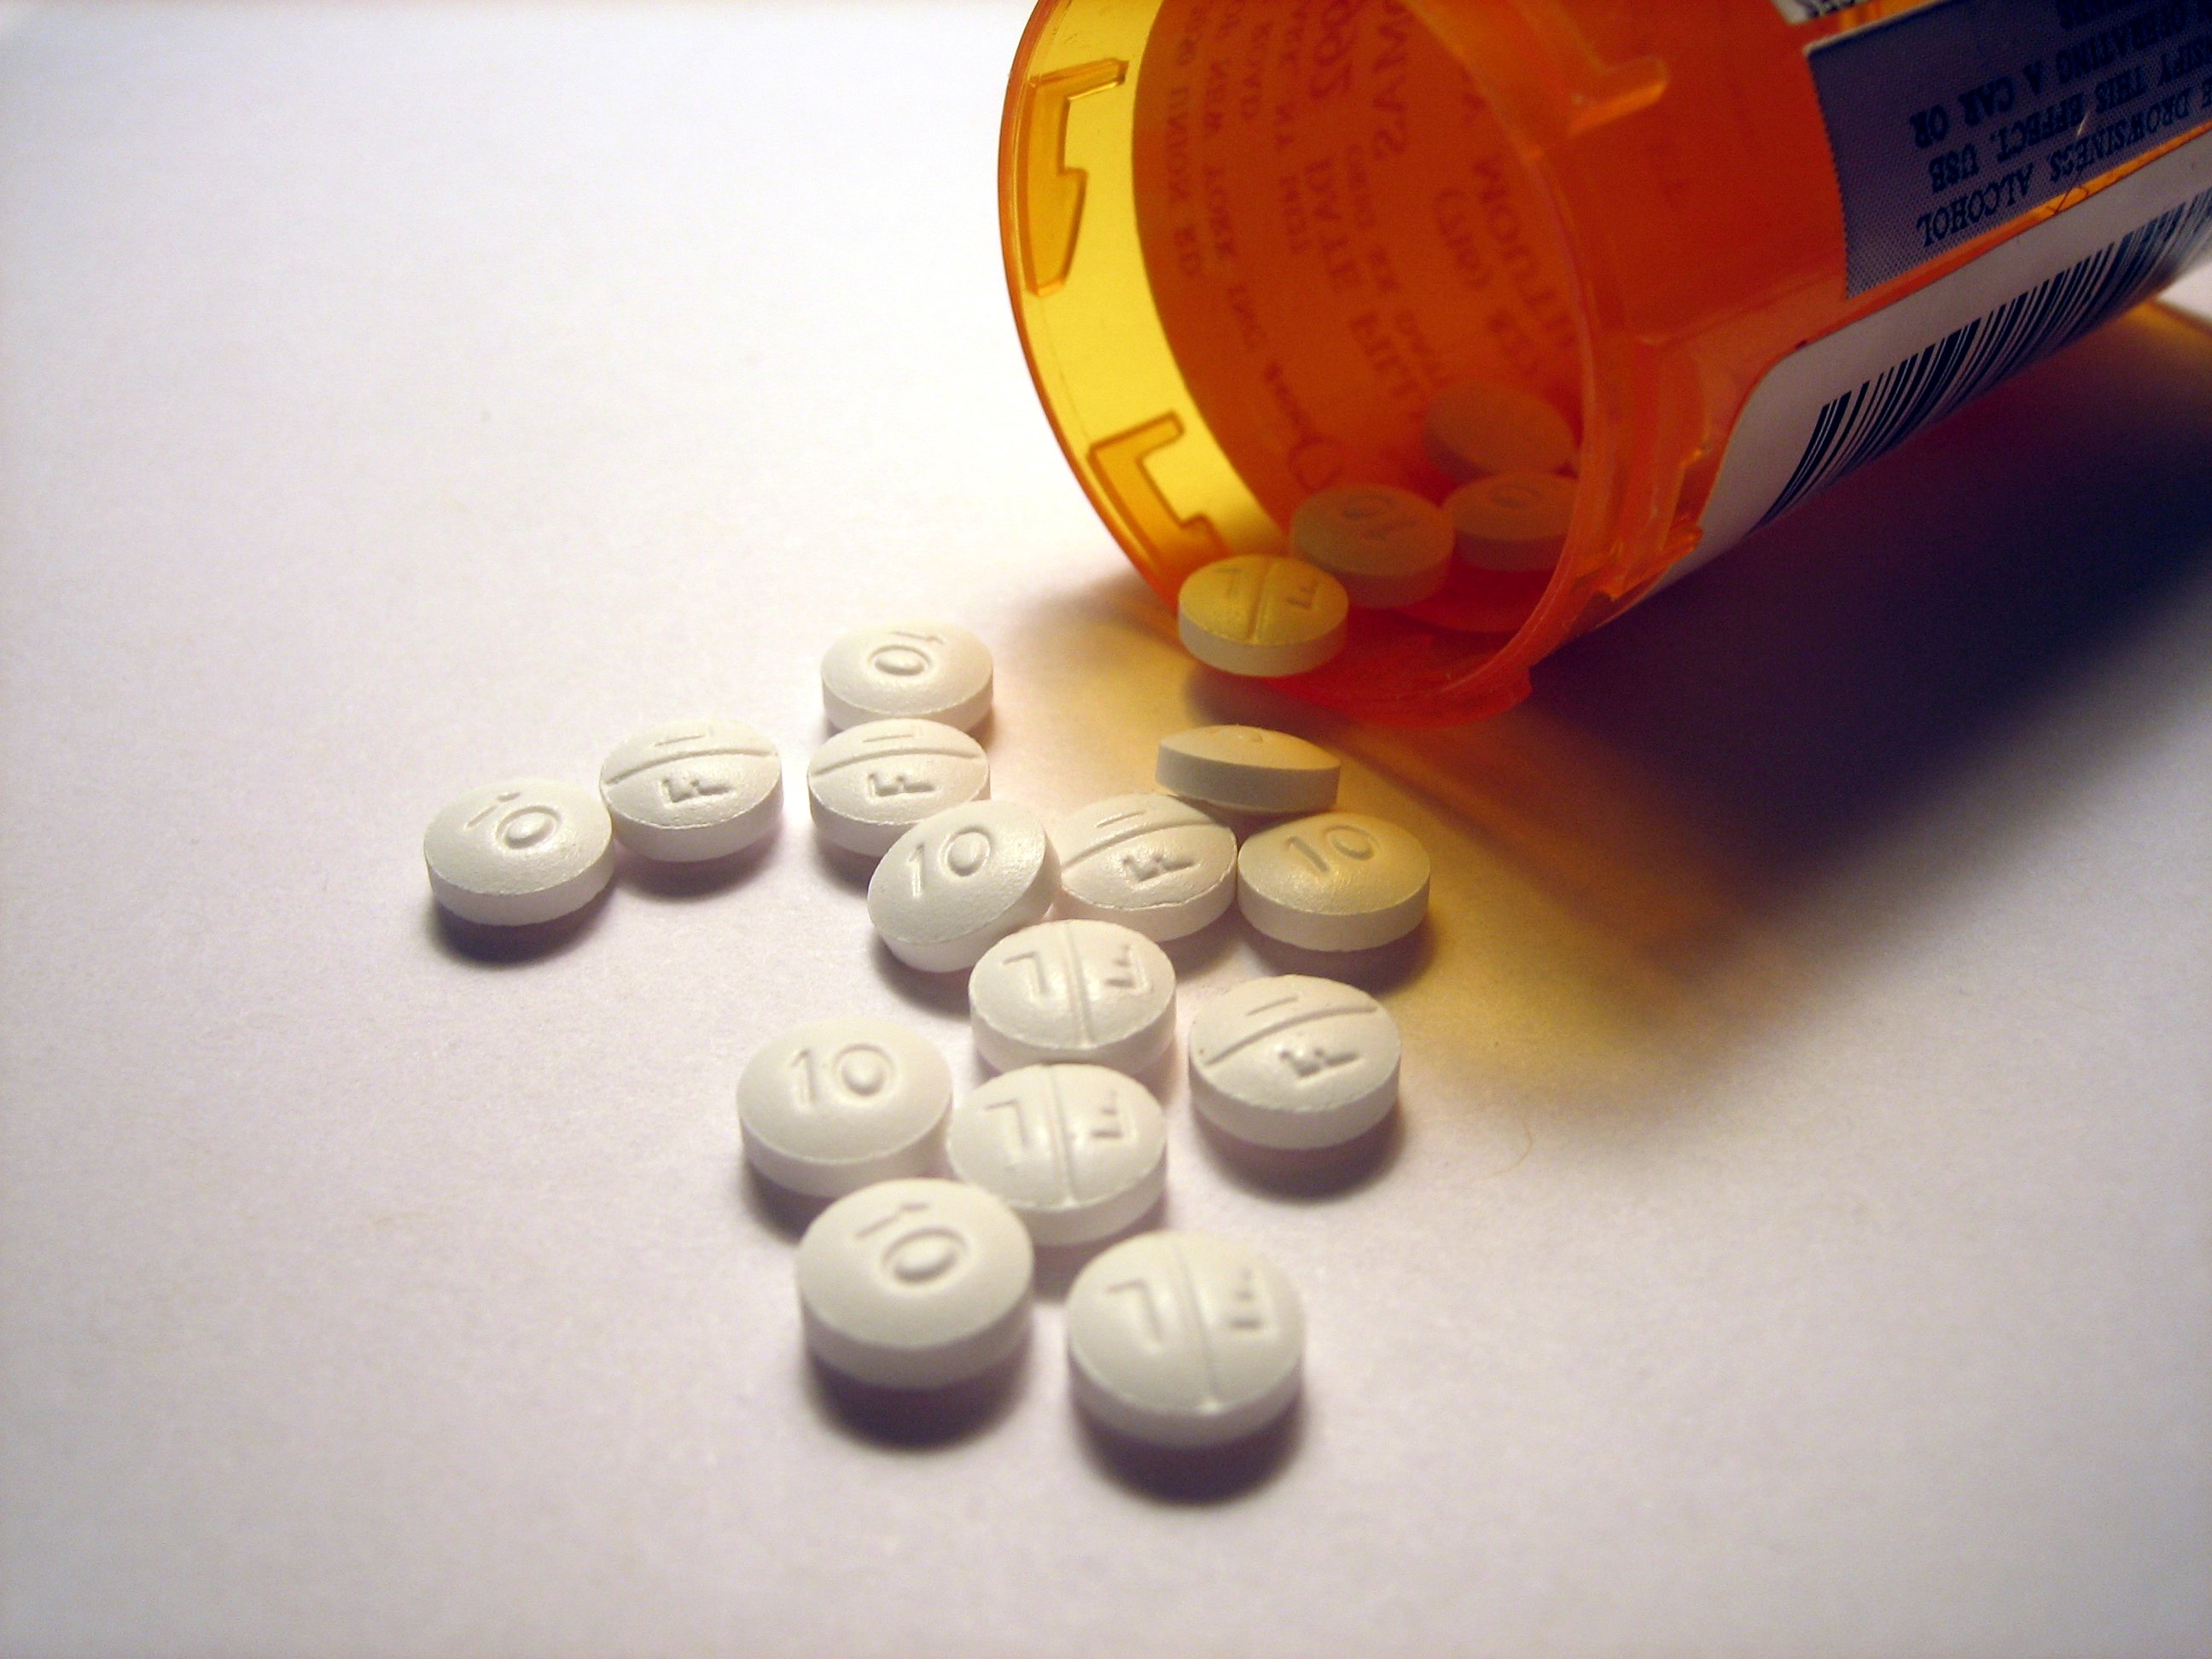 Up phentermine show test does diet pill drug